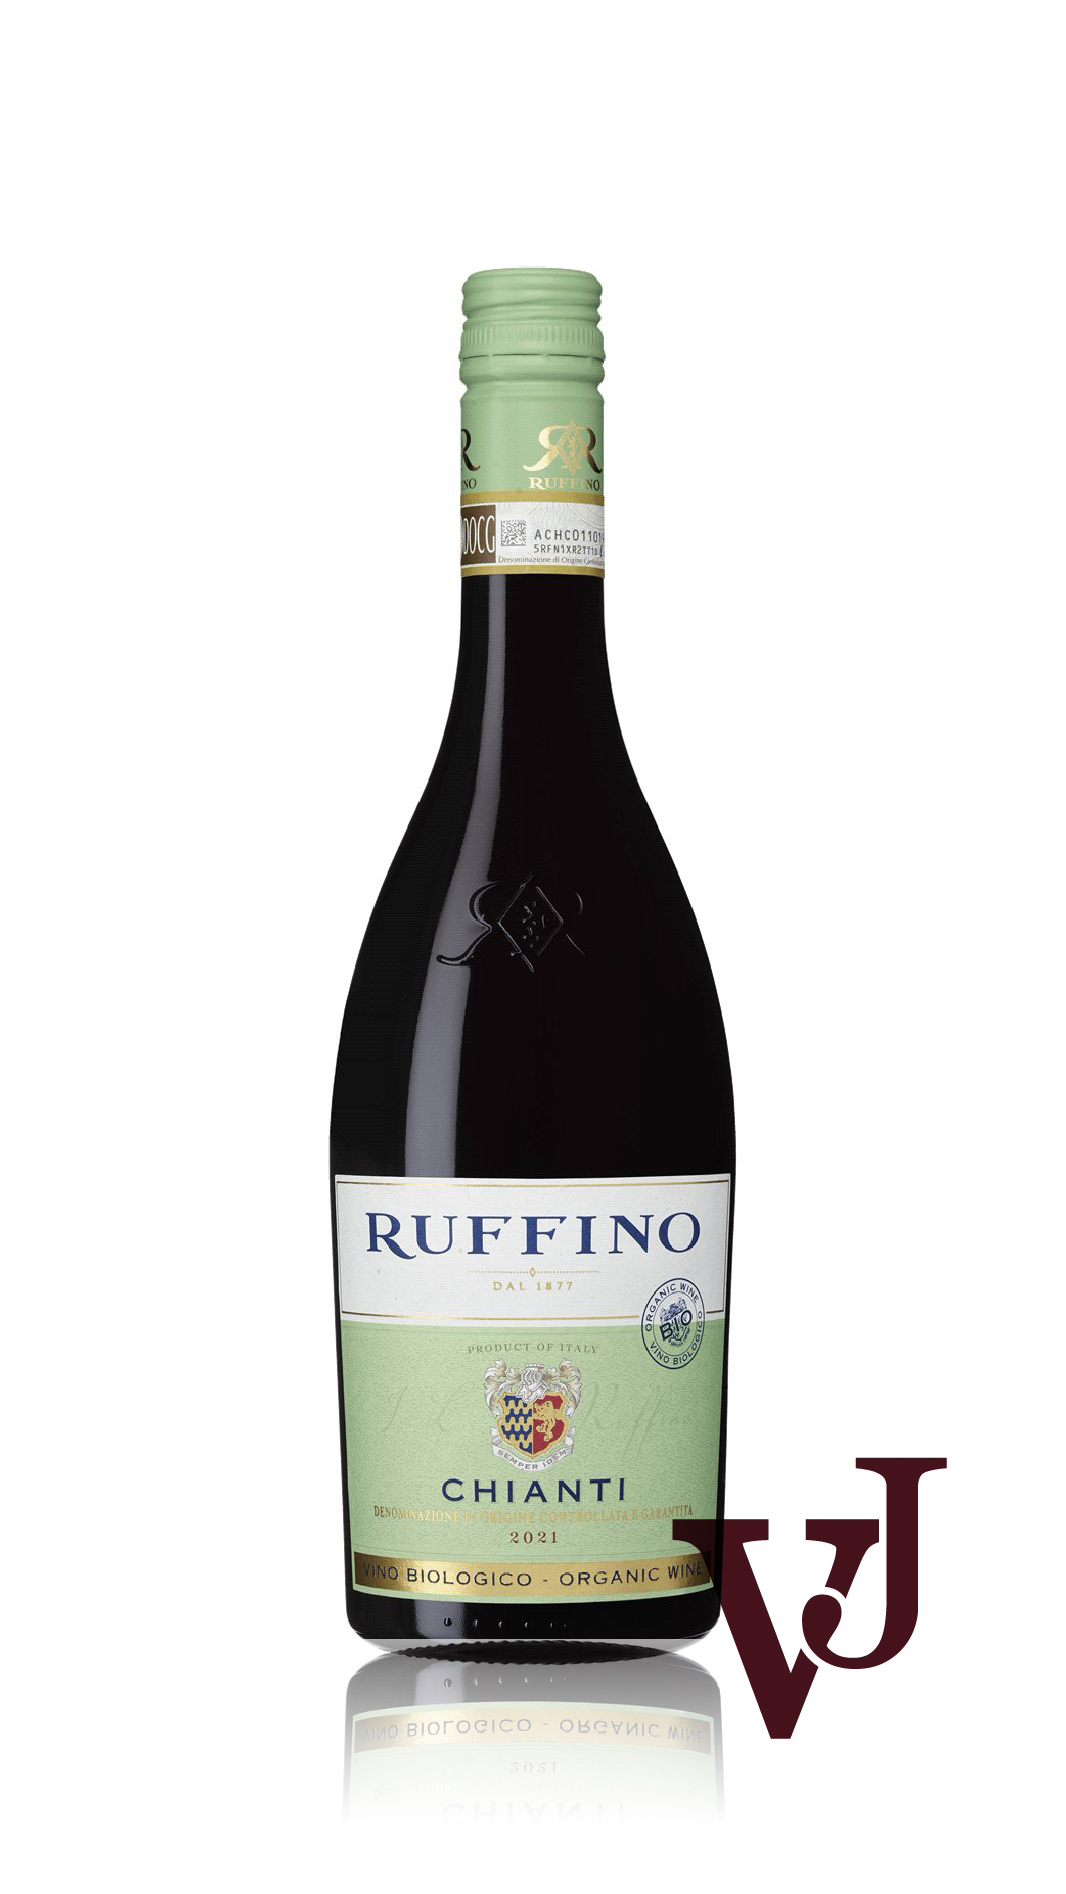 Rött Vin - Ruffino Chianti artikel nummer 231001 från producenten Ruffino från området Italien